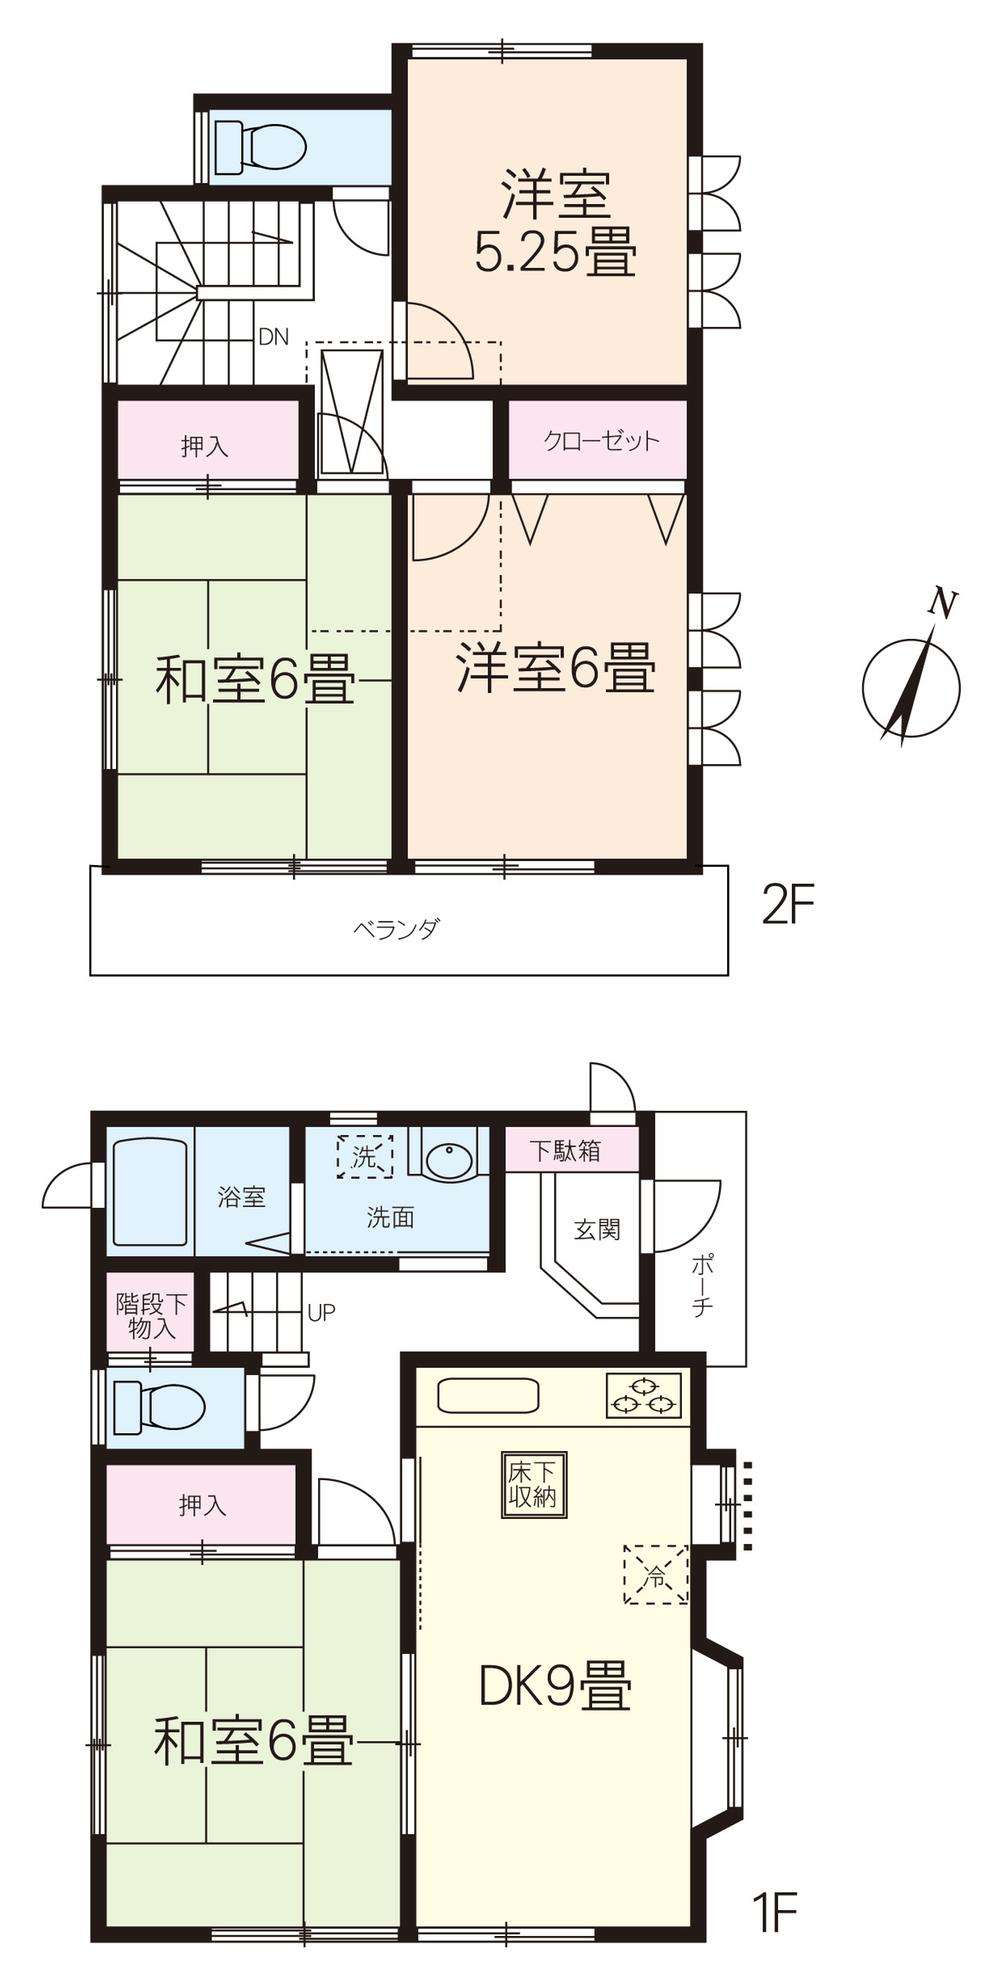 Floor plan. 16.8 million yen, 4DK, Land area 71.25 sq m , Building area 81.35 sq m